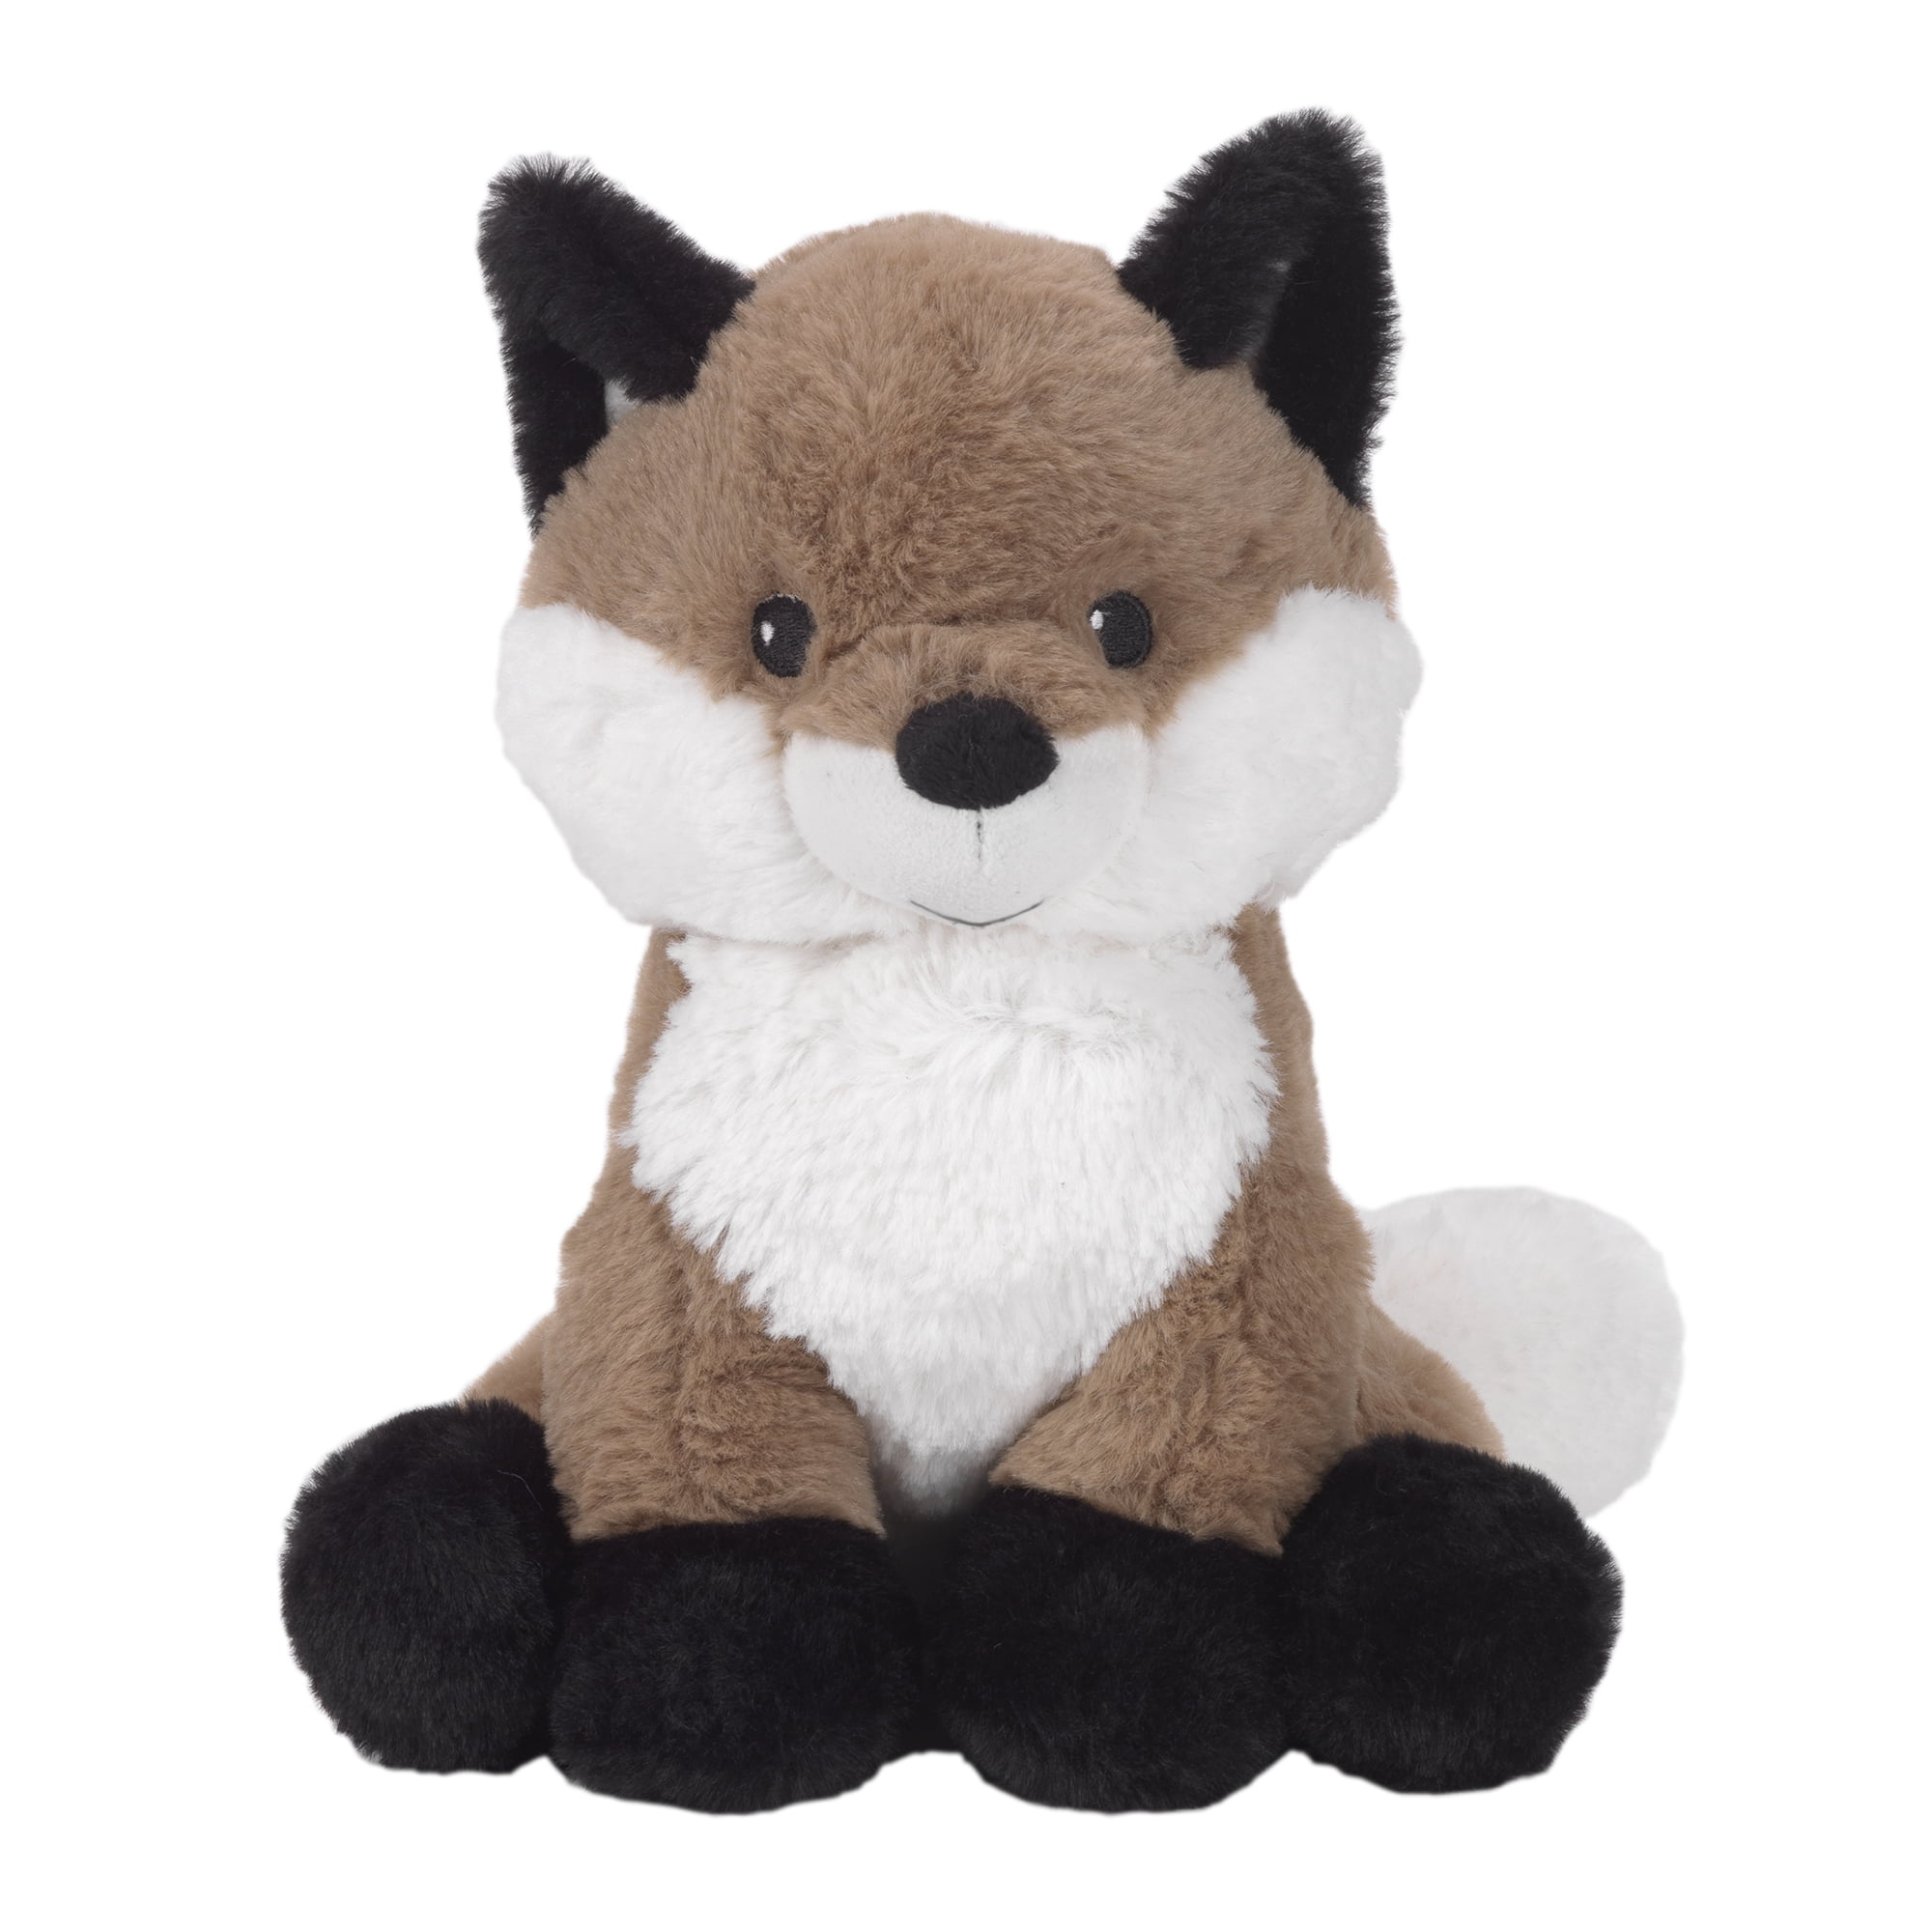 Aurora MIYONI FOX LYING 28CM Soft Plush Teddy Toy Stuffed Animal Orange Gift BN 